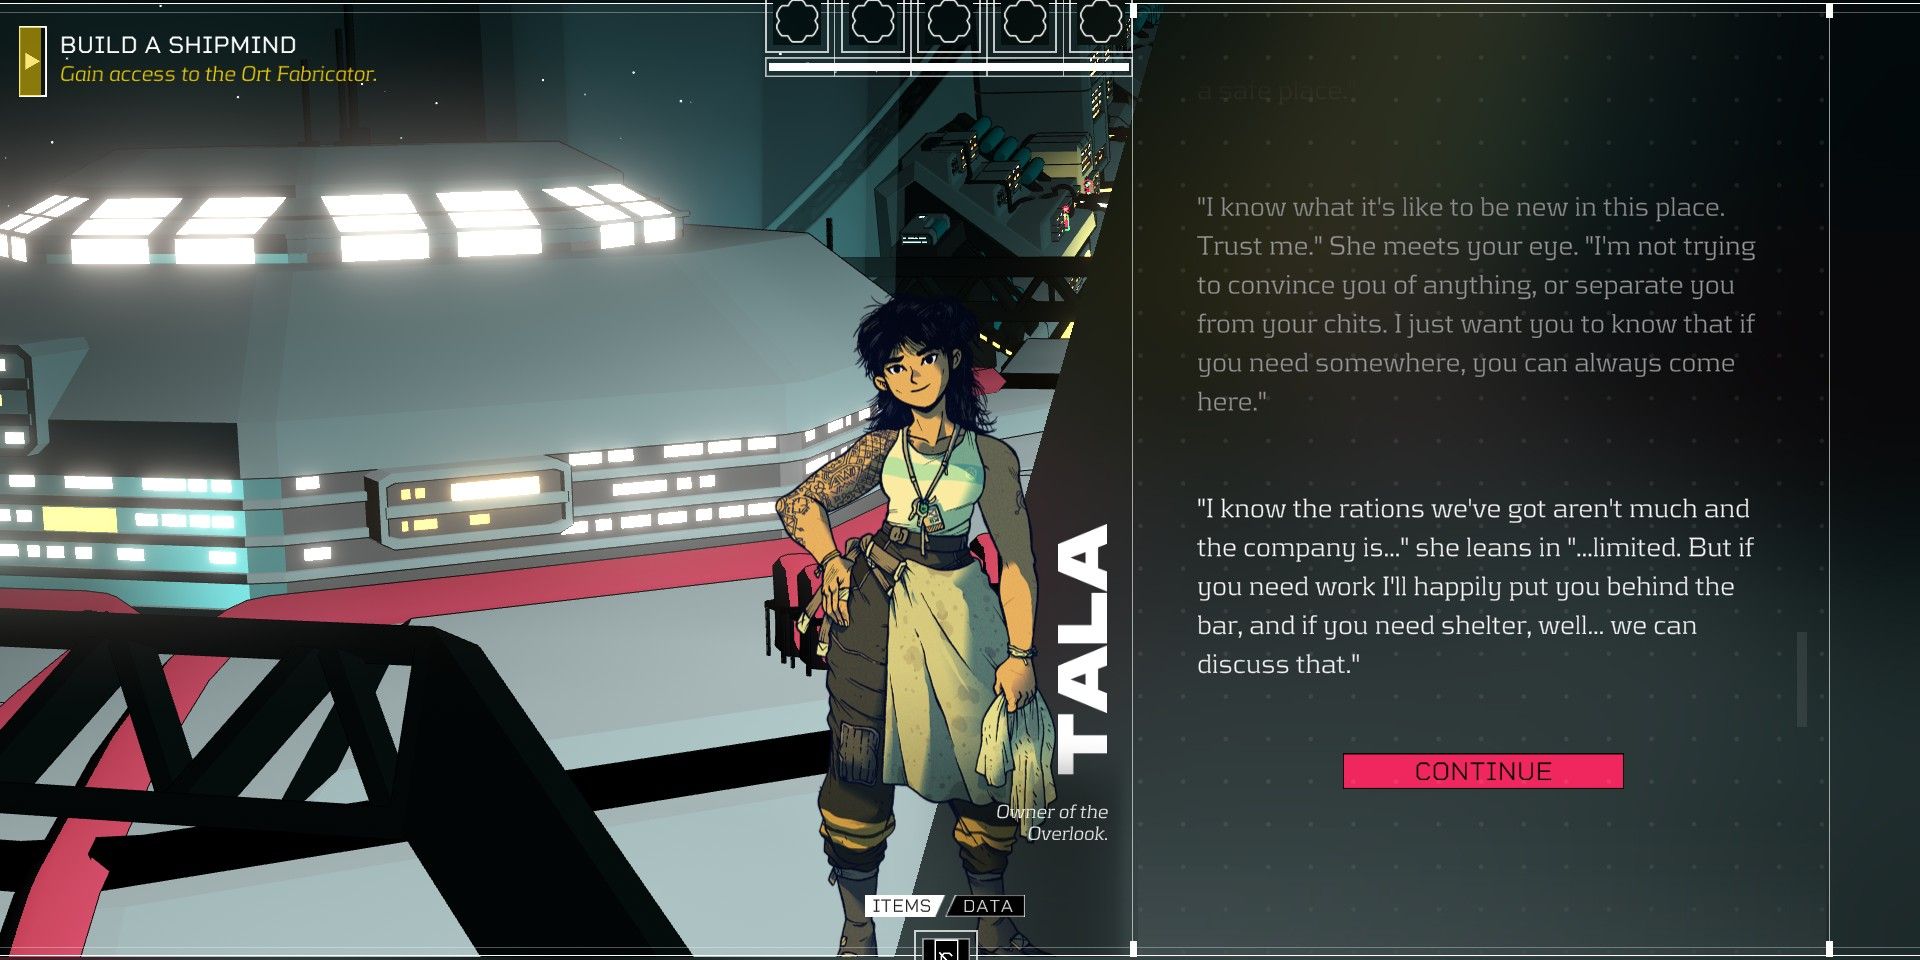 Citizen Sleeper screenshot of Tala in dialogue